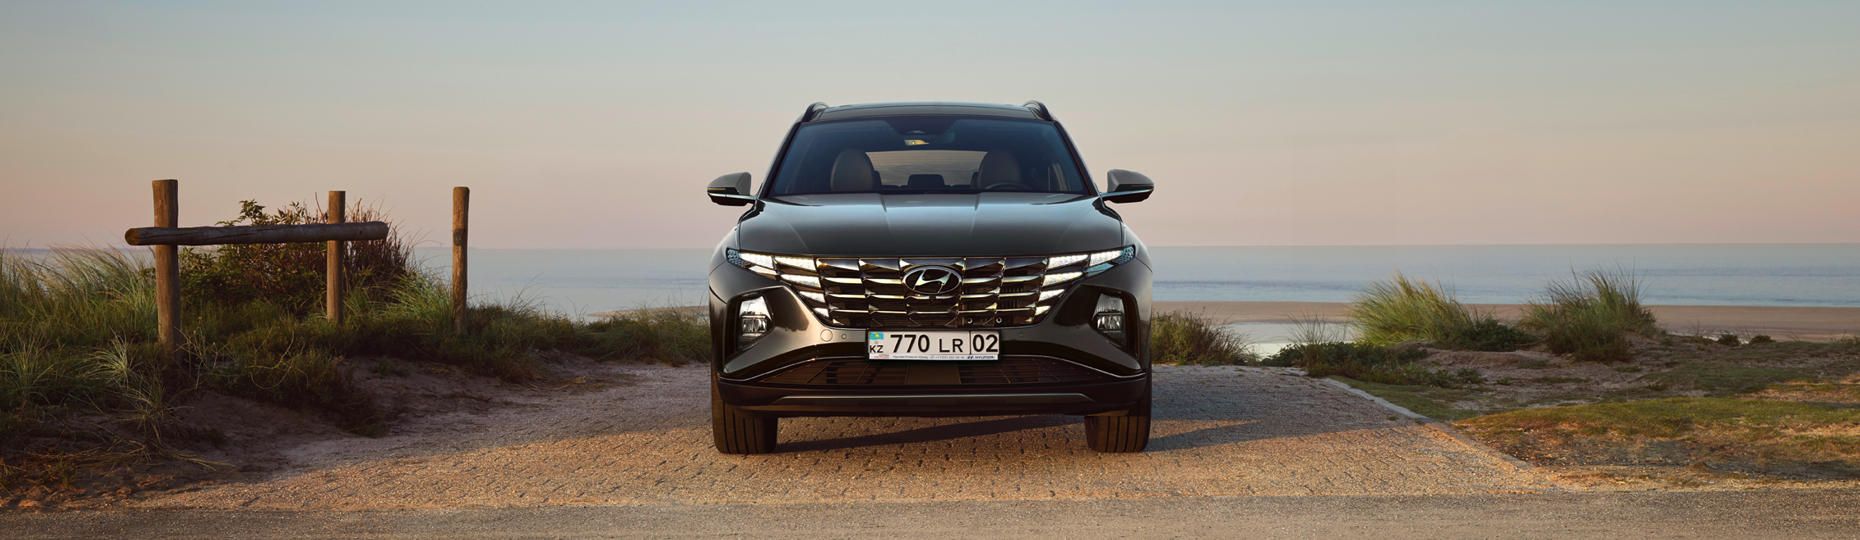 Технические характеристики Hyundai Tucson | Официальный дилер в Алматы